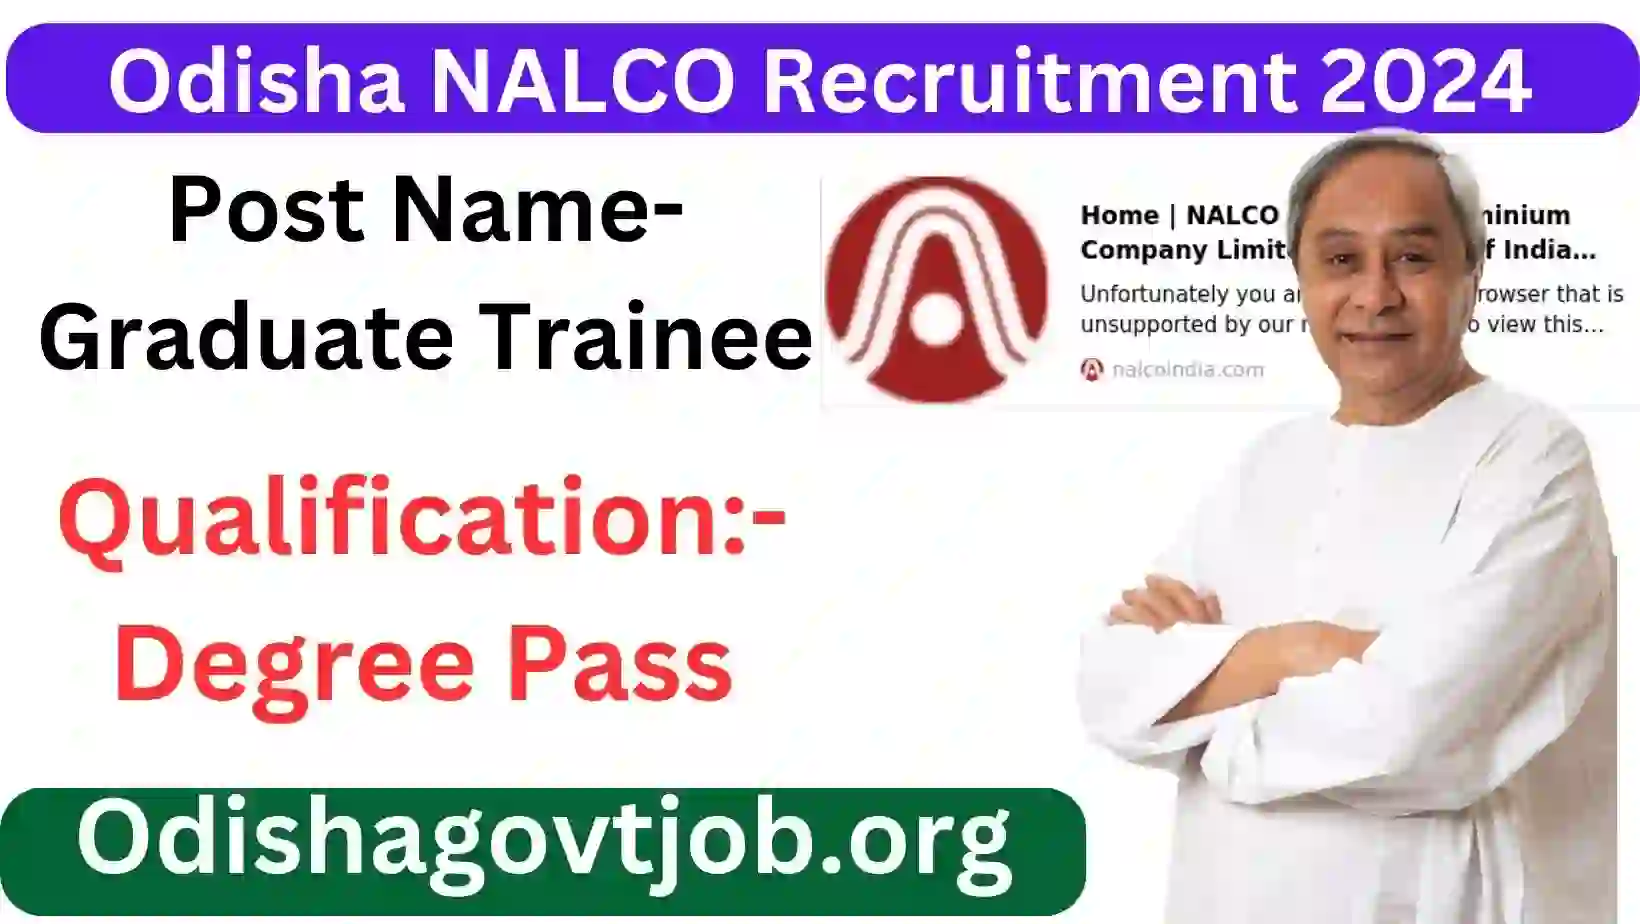 Odisha NALCO Recruitment 2024